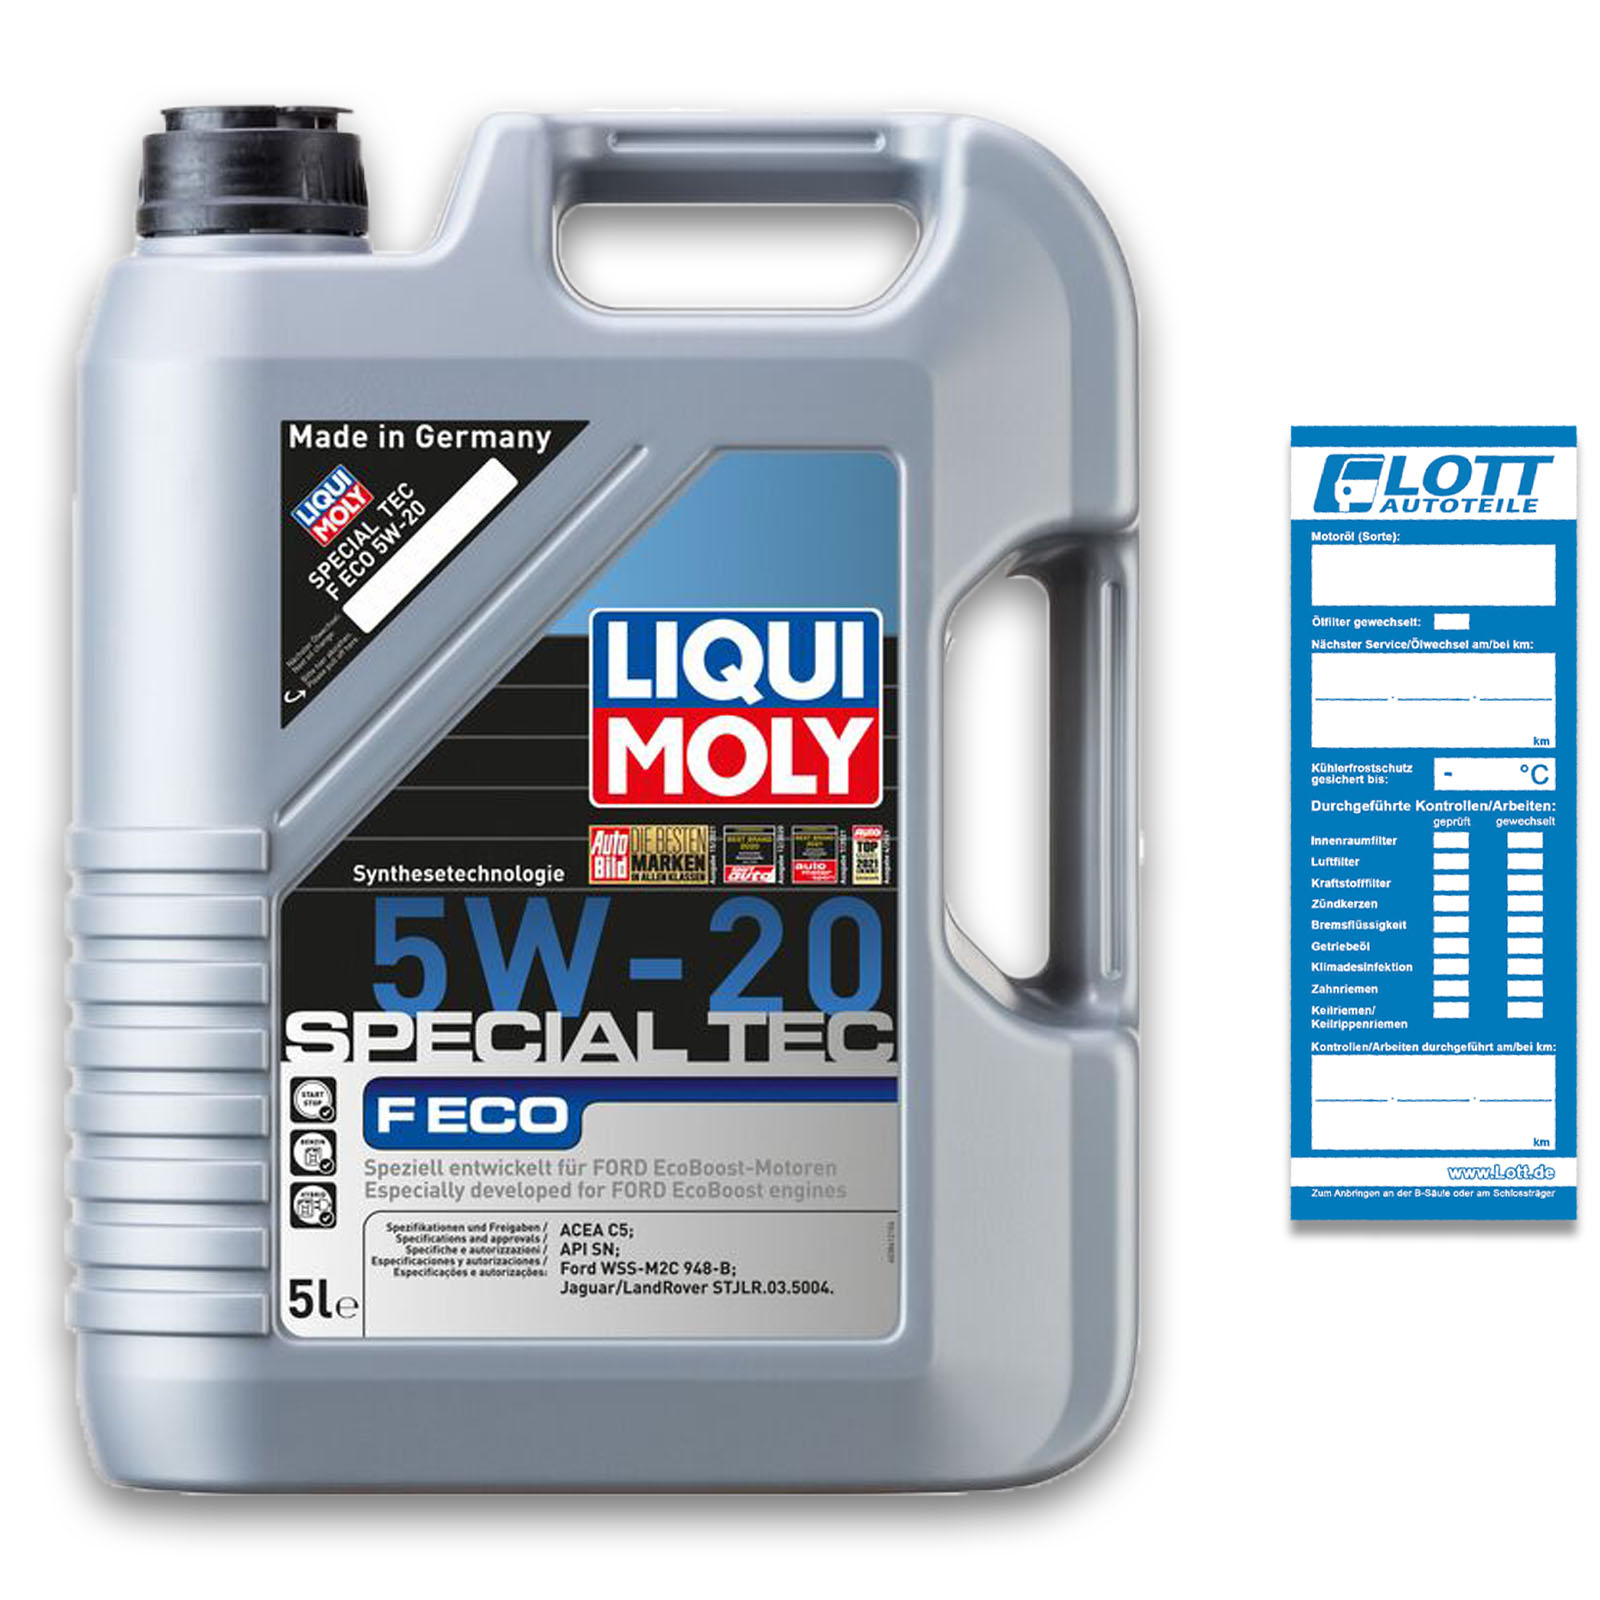 Liqui Moly Special Tec F ECO 5W-20 5l